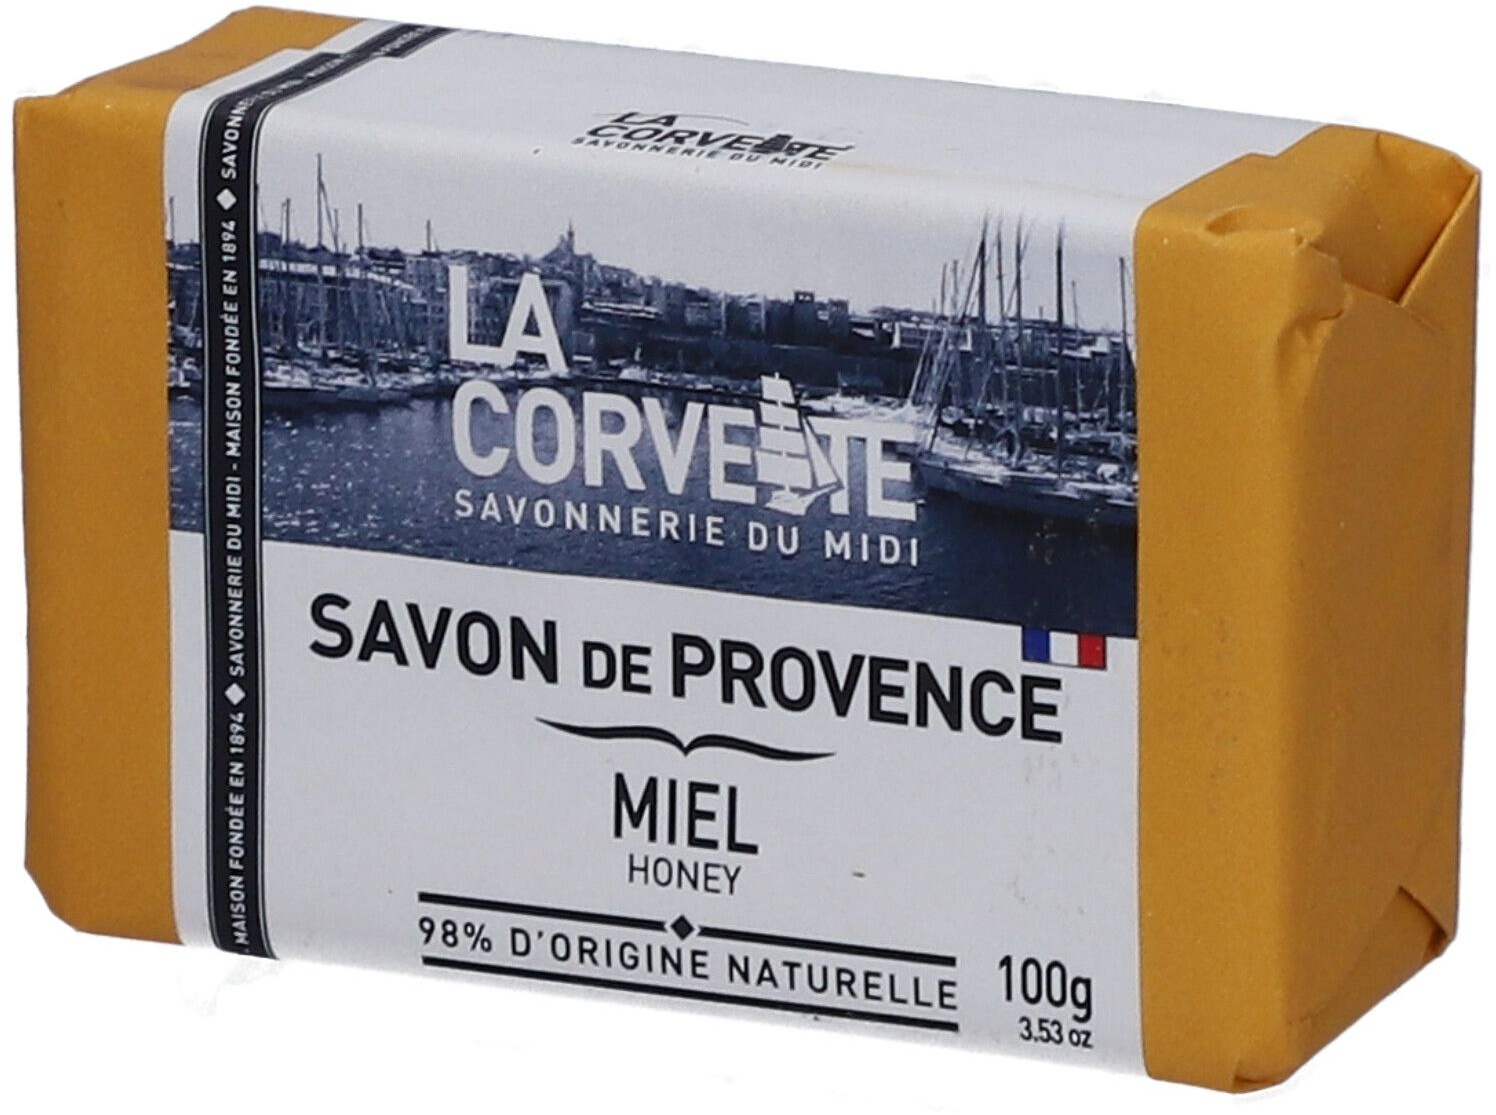 LA CORVETTE Savon de Provence Miel 100 g savon